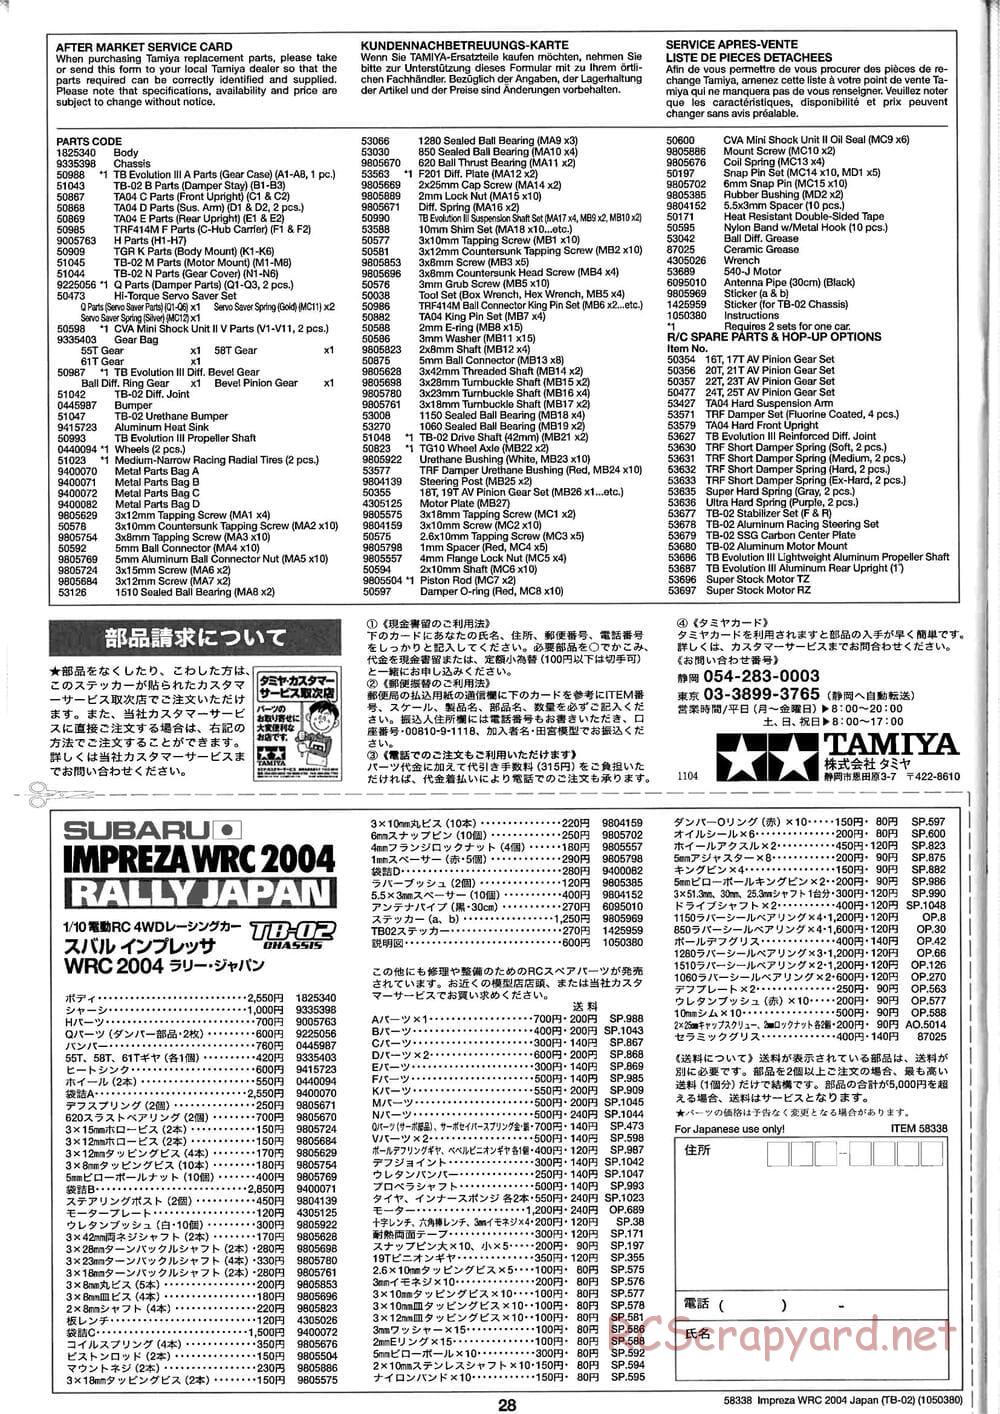 Tamiya - Subaru Impreza WRC 2004 Rally Japan - TB-02 Chassis - Manual - Page 28